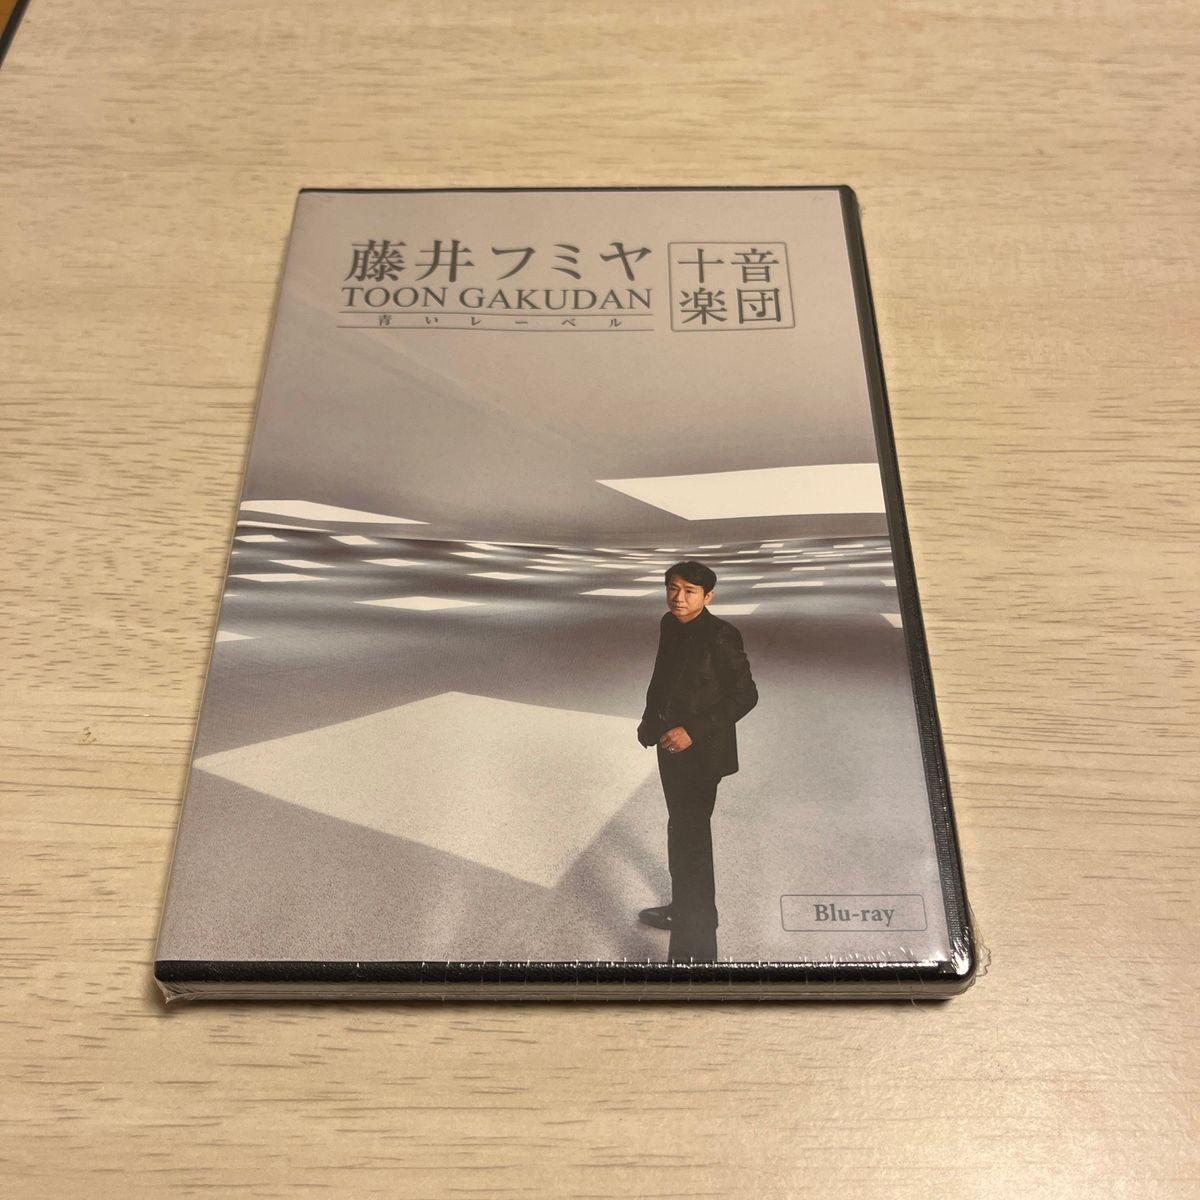 藤井フミヤ 十音楽団 Blu-ray 未開封 Blu-ray-